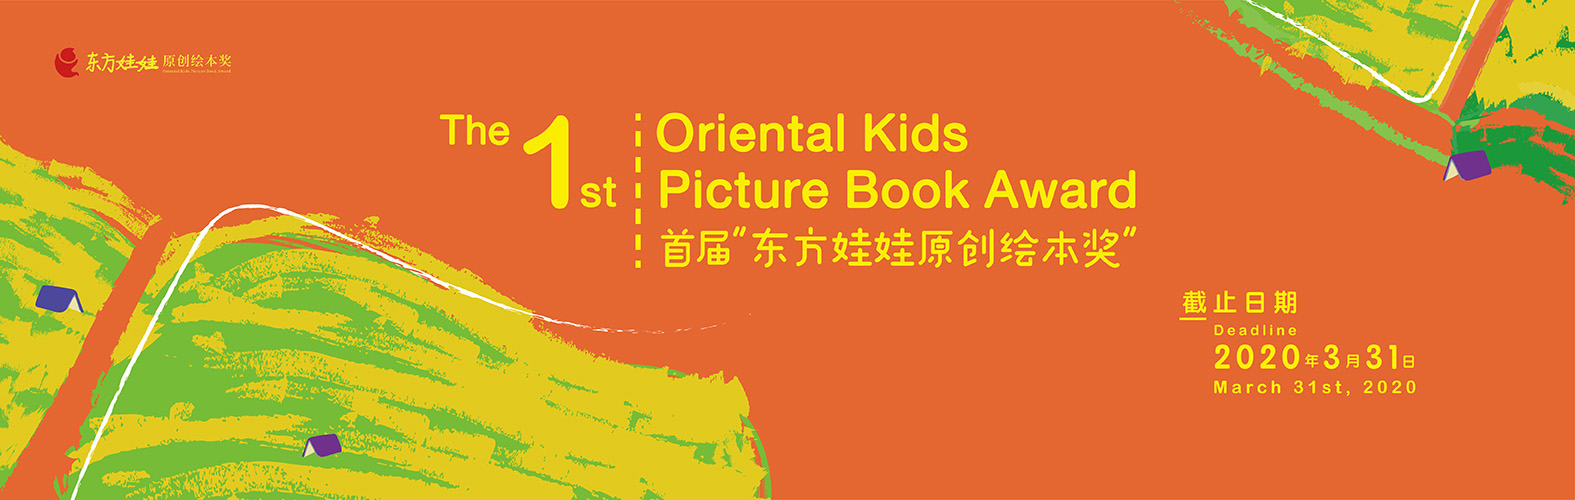 (截止2020.3.31) 首届“东方娃娃原创绘本奖” The 1st Oriental Kids Picture Book Award